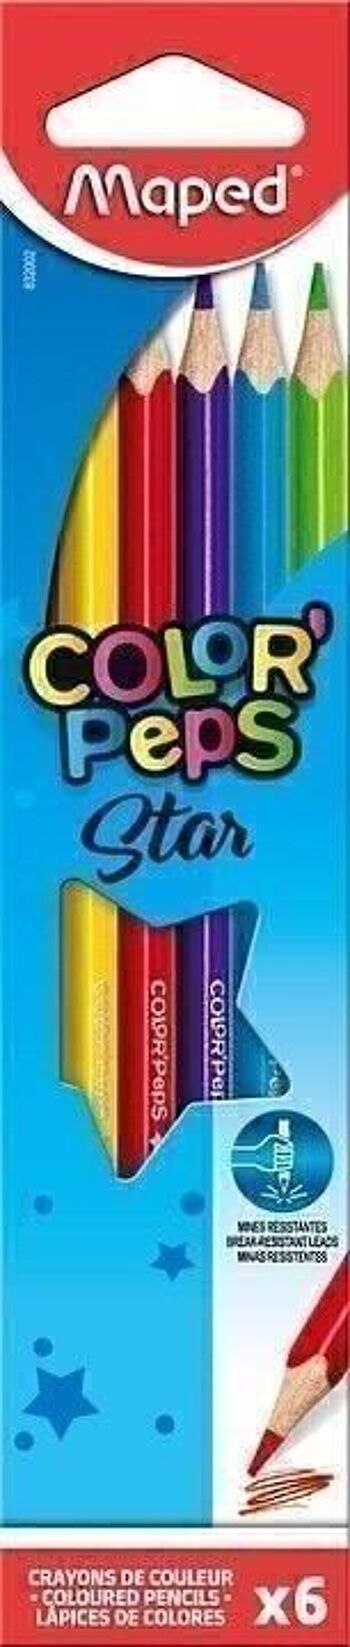 6 crayons de couleur COLOR'PEPS STAR en pochette carton 3